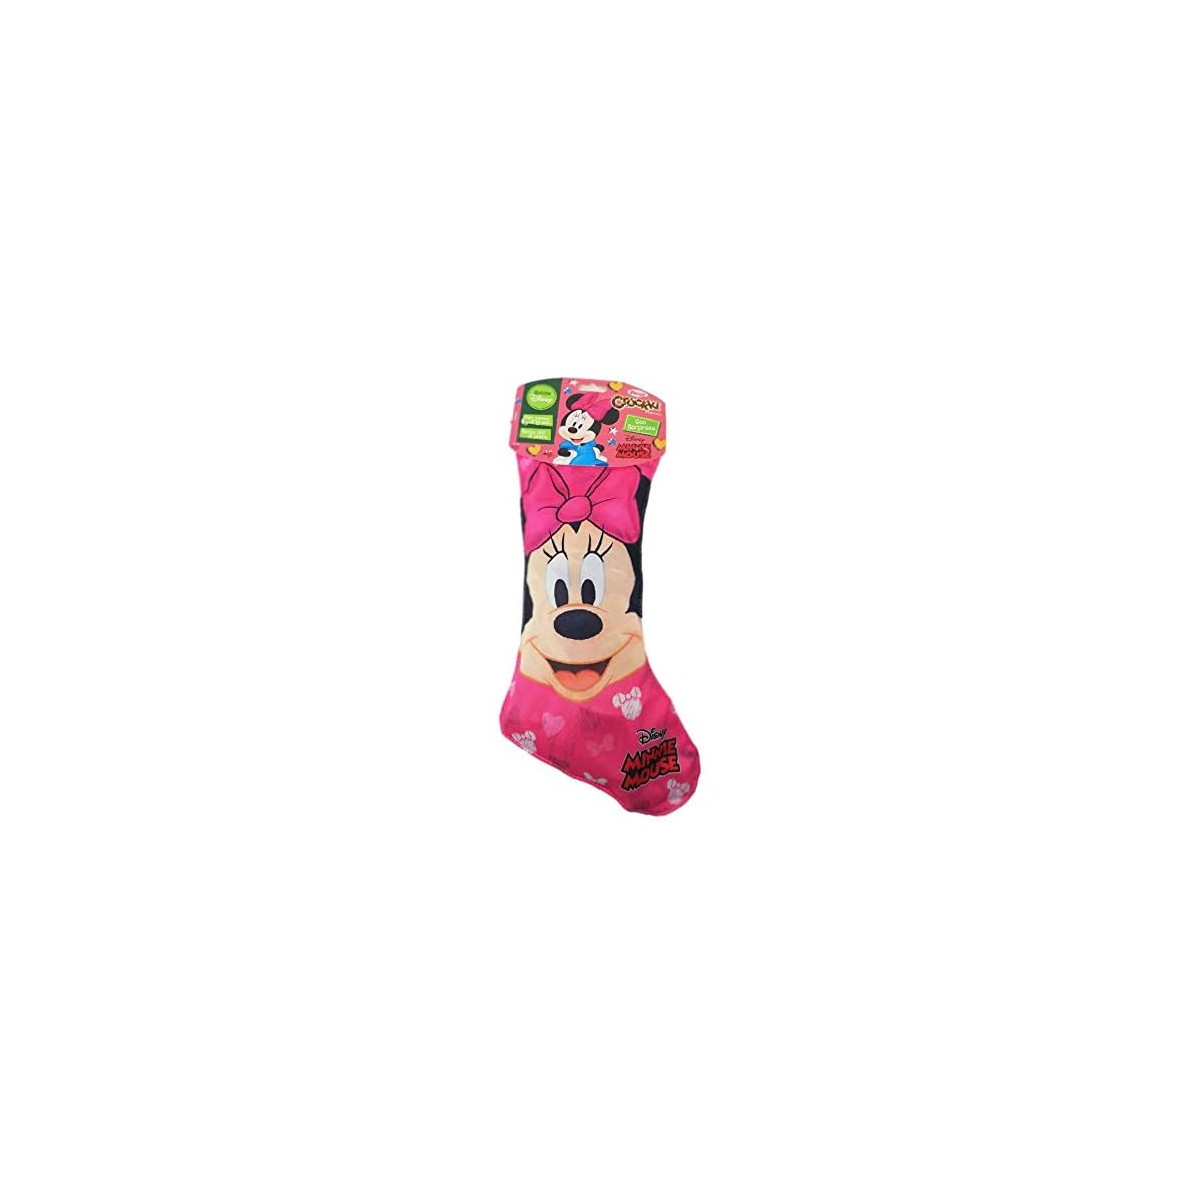 Calza della Befana di Minnie Disney con dolci e sorpresa